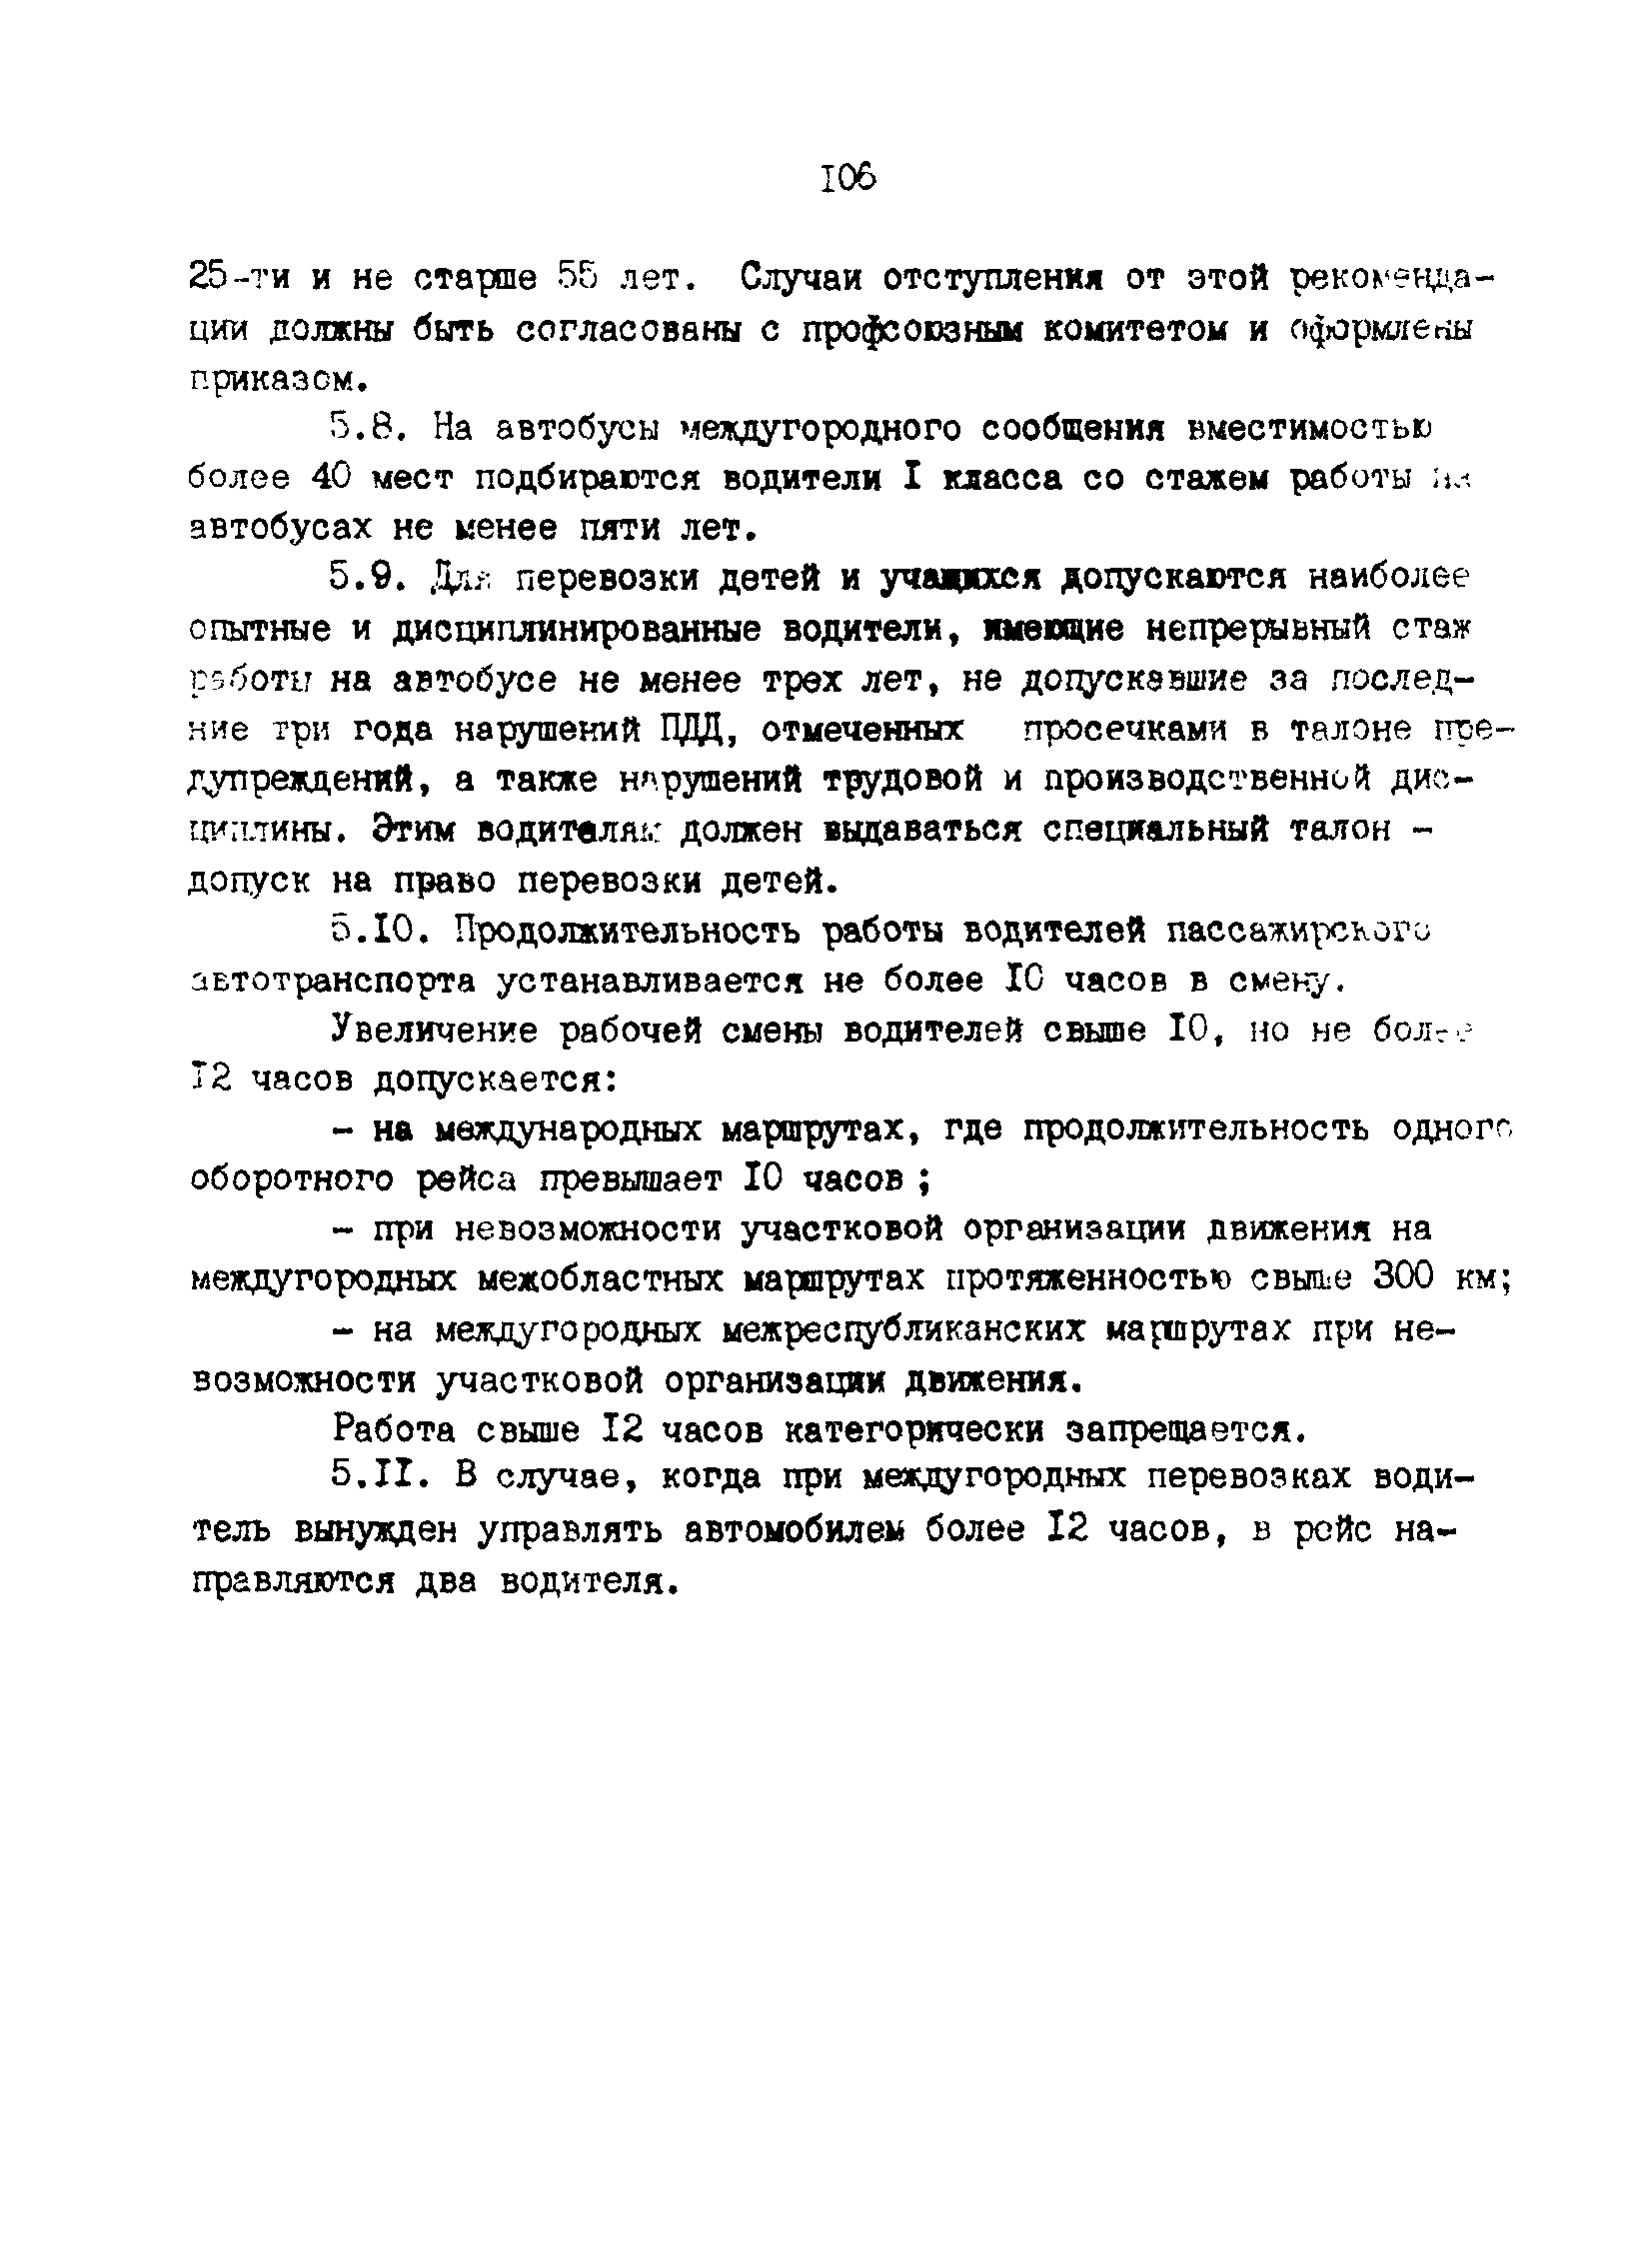 РД 200-РСФСР-12-0071-86-10